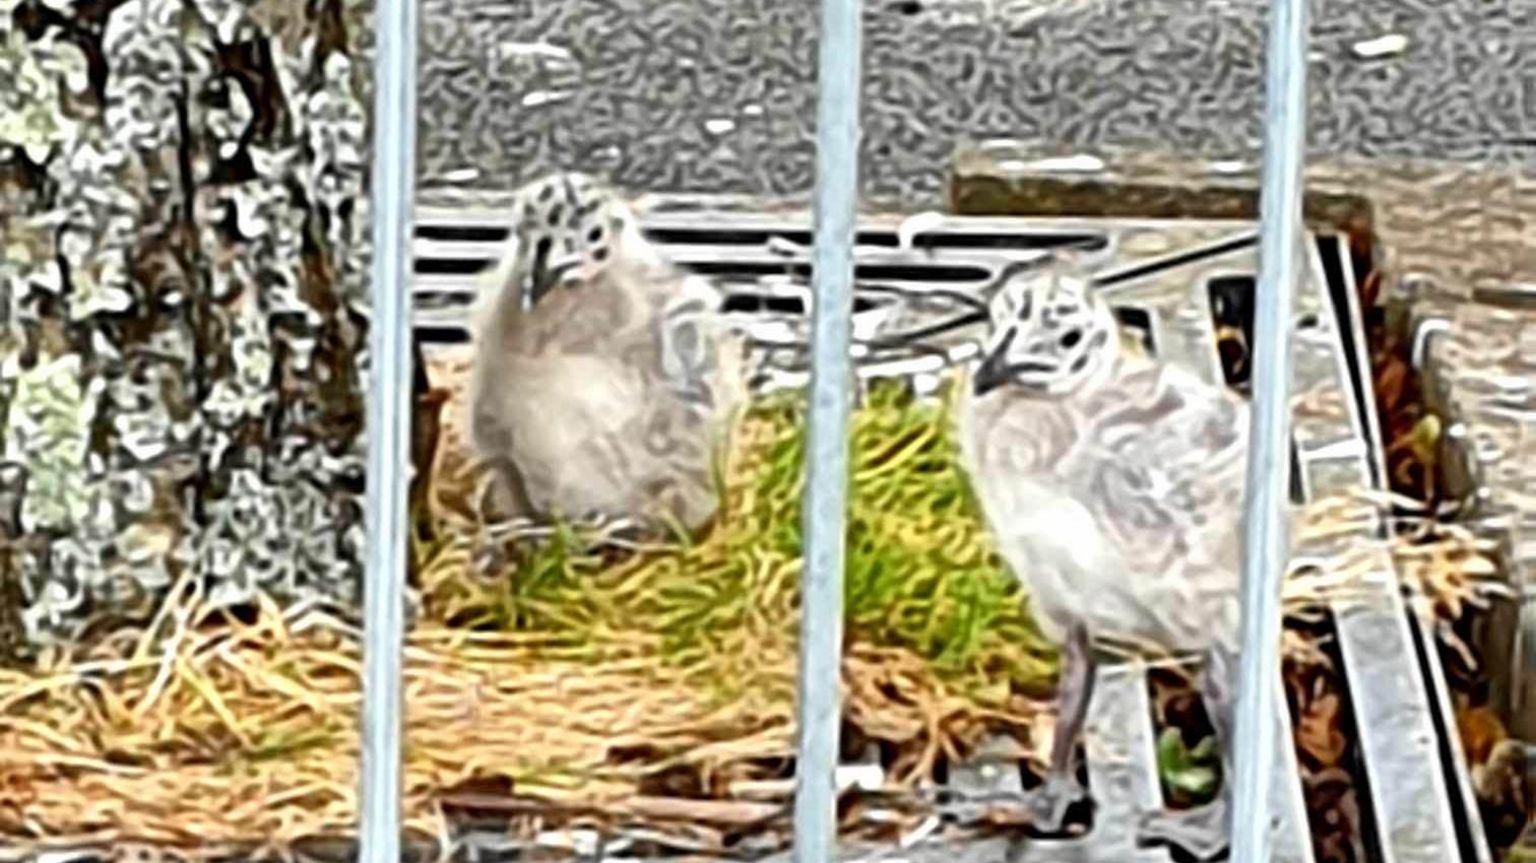 Two baby gulls